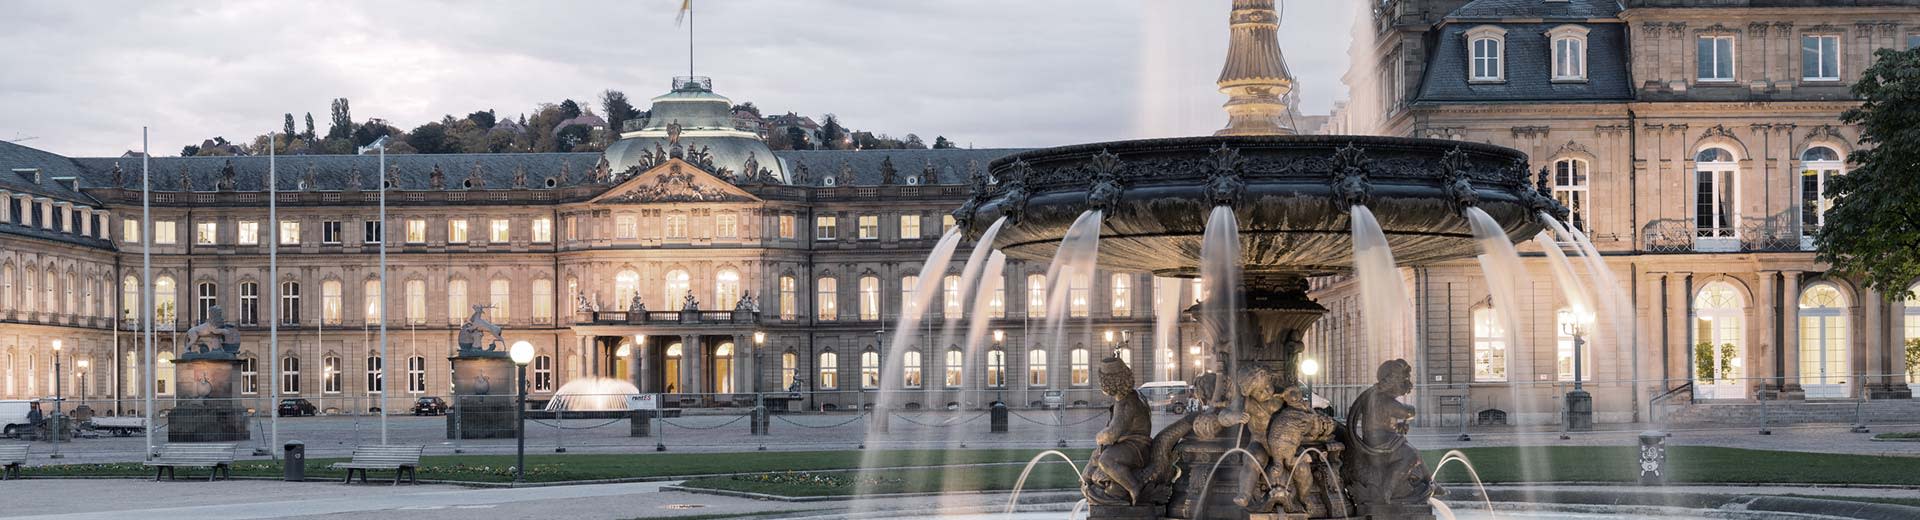 Une belle fontaine domine le premier plan, tandis que derrière se dresse un bâtiment historique en demi-lumière d'une soirée de Stuttgart.